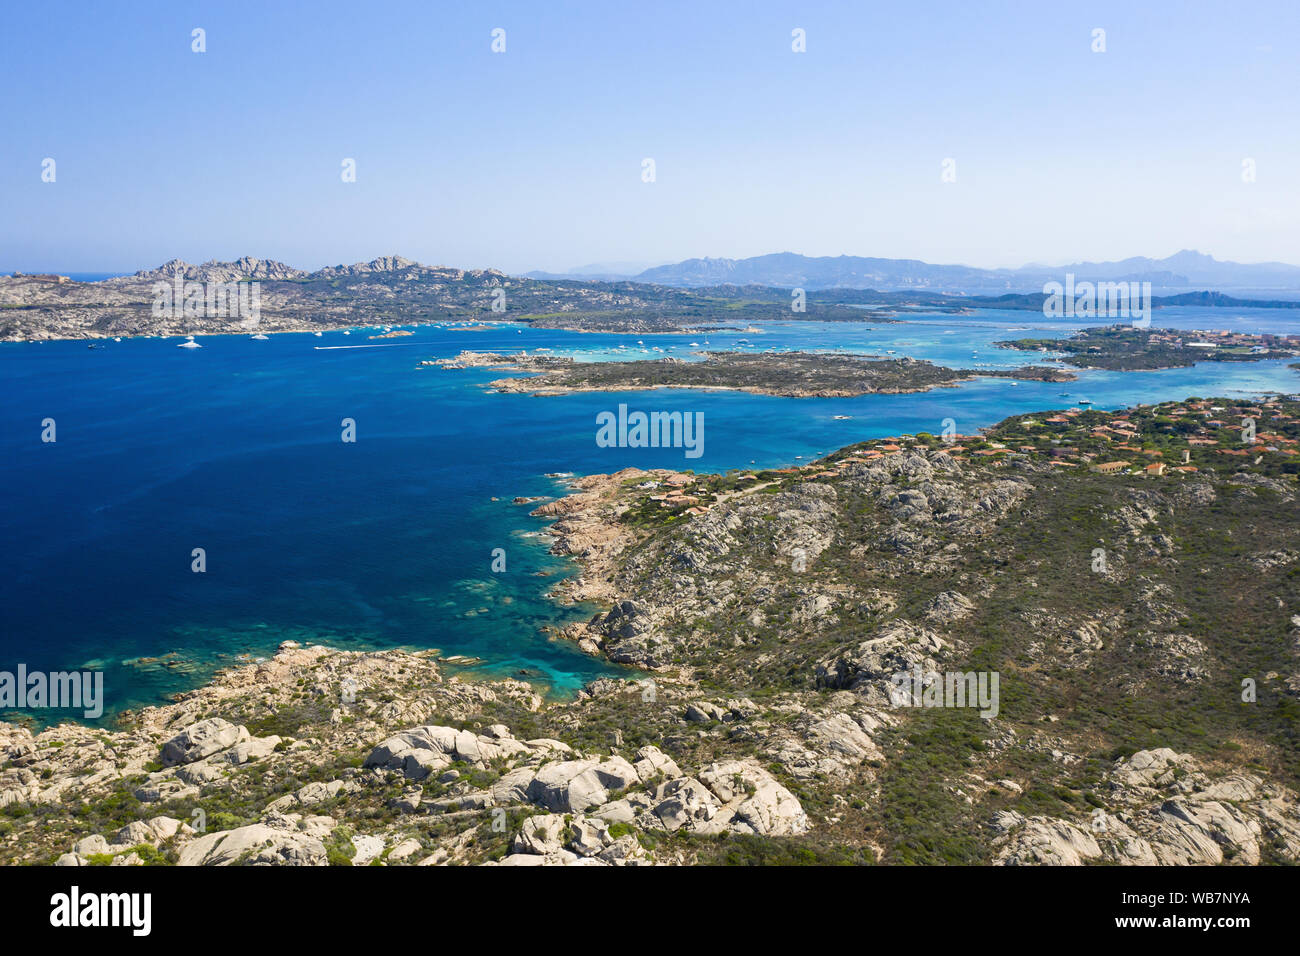 Vue de dessus, superbe vue aérienne du Parc National de l'archipel de La Maddalena avec certaines îles entourées par une belle mer turquoise clair. Banque D'Images